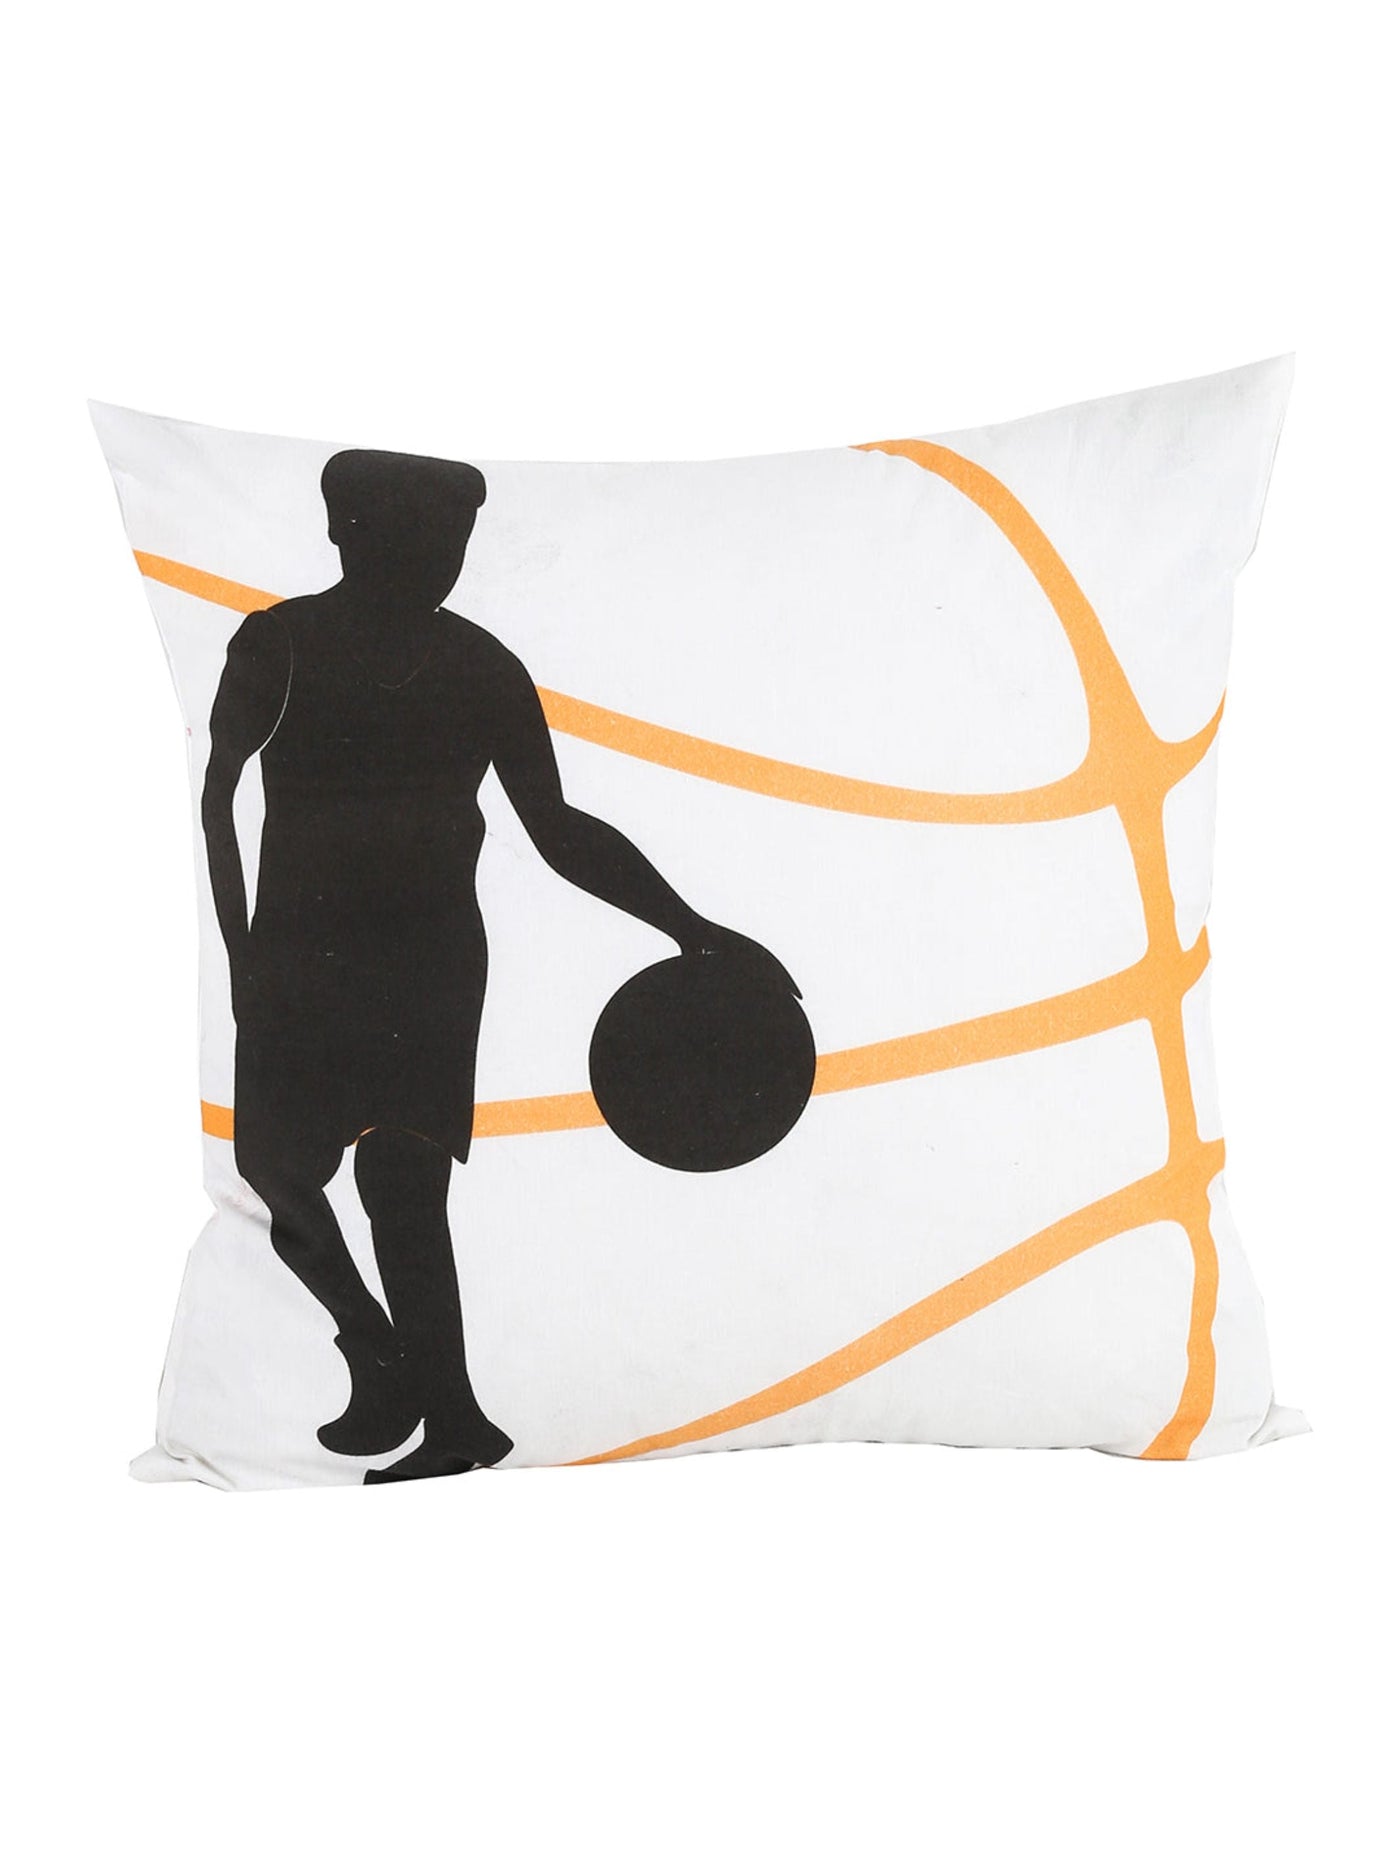 Cushion Cover - Basket Ball